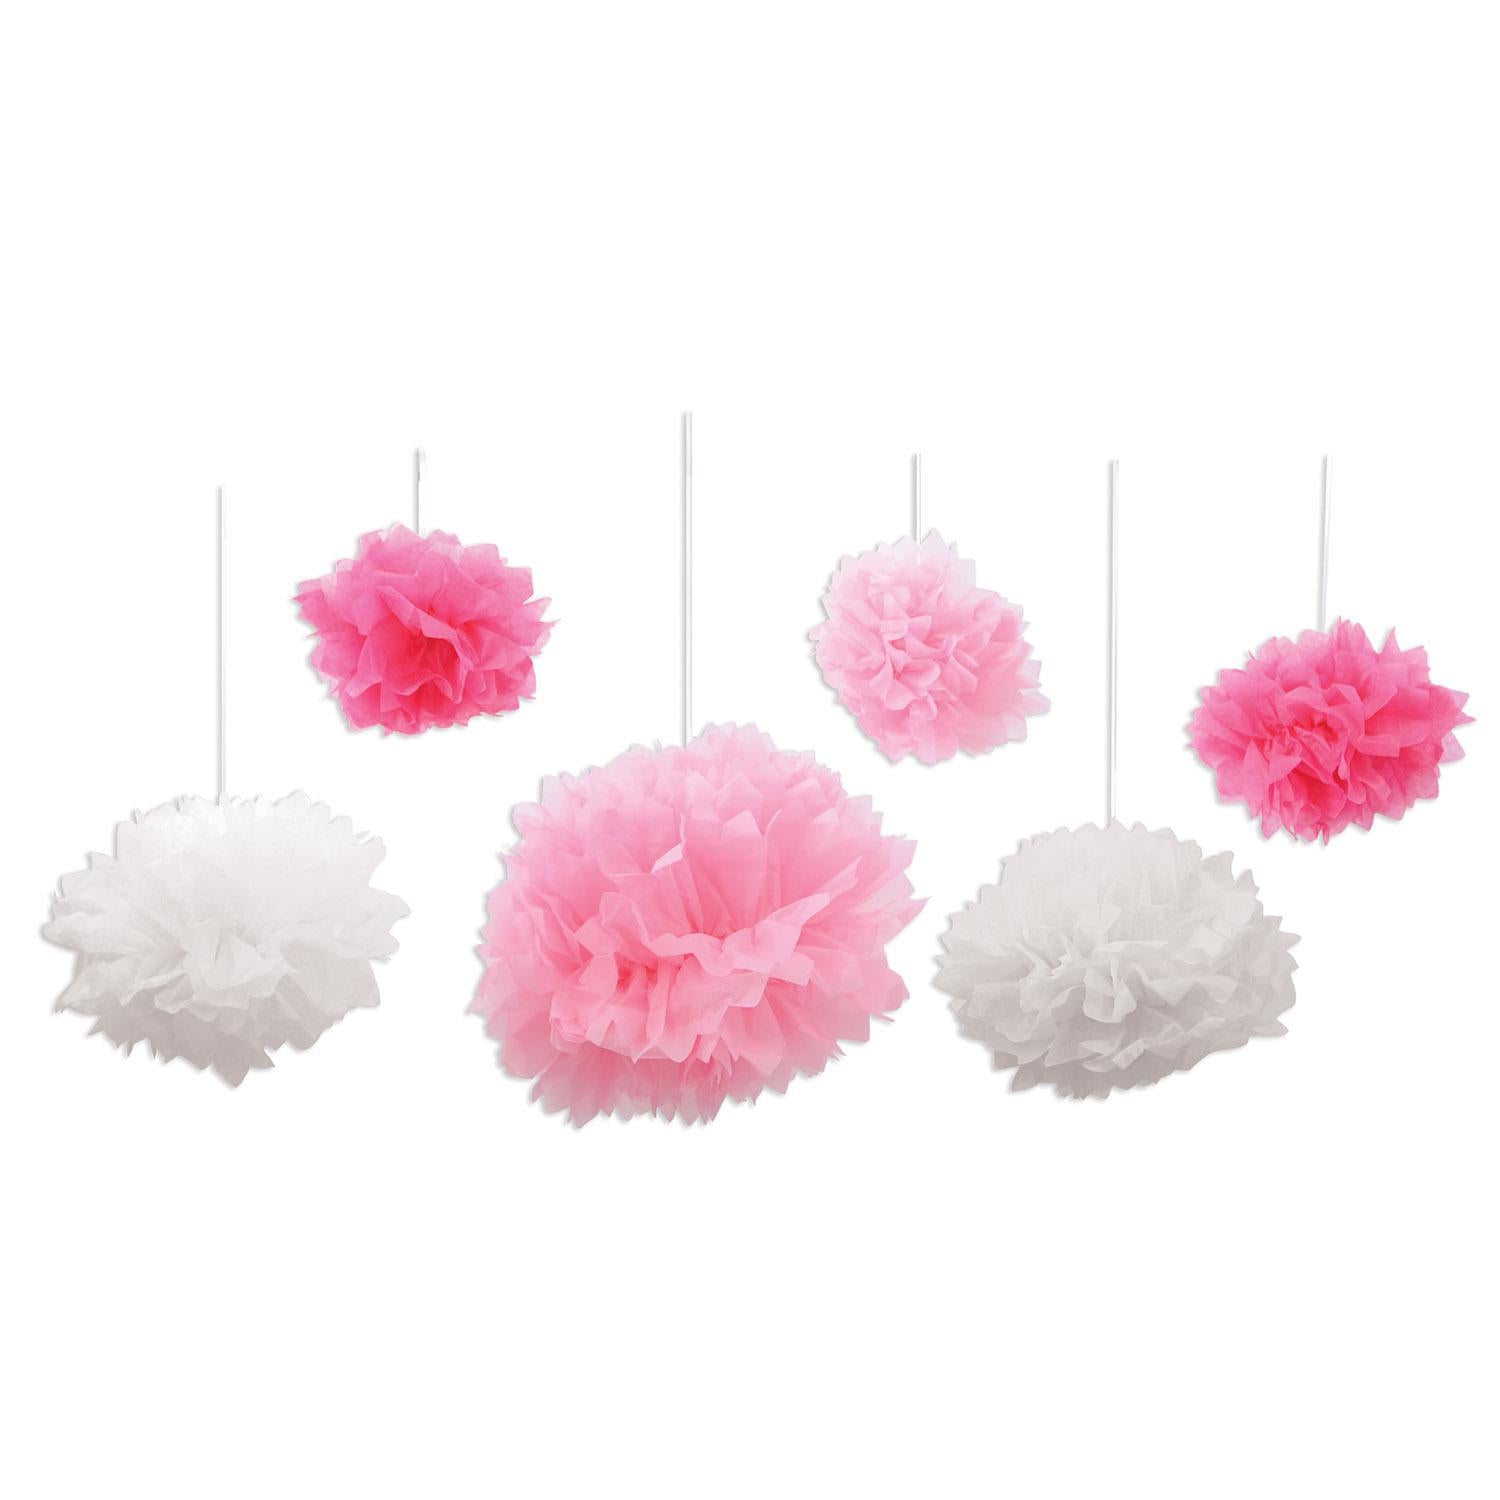 Beistle Tissue Fluff Balls - pink & white (6/Pkg)